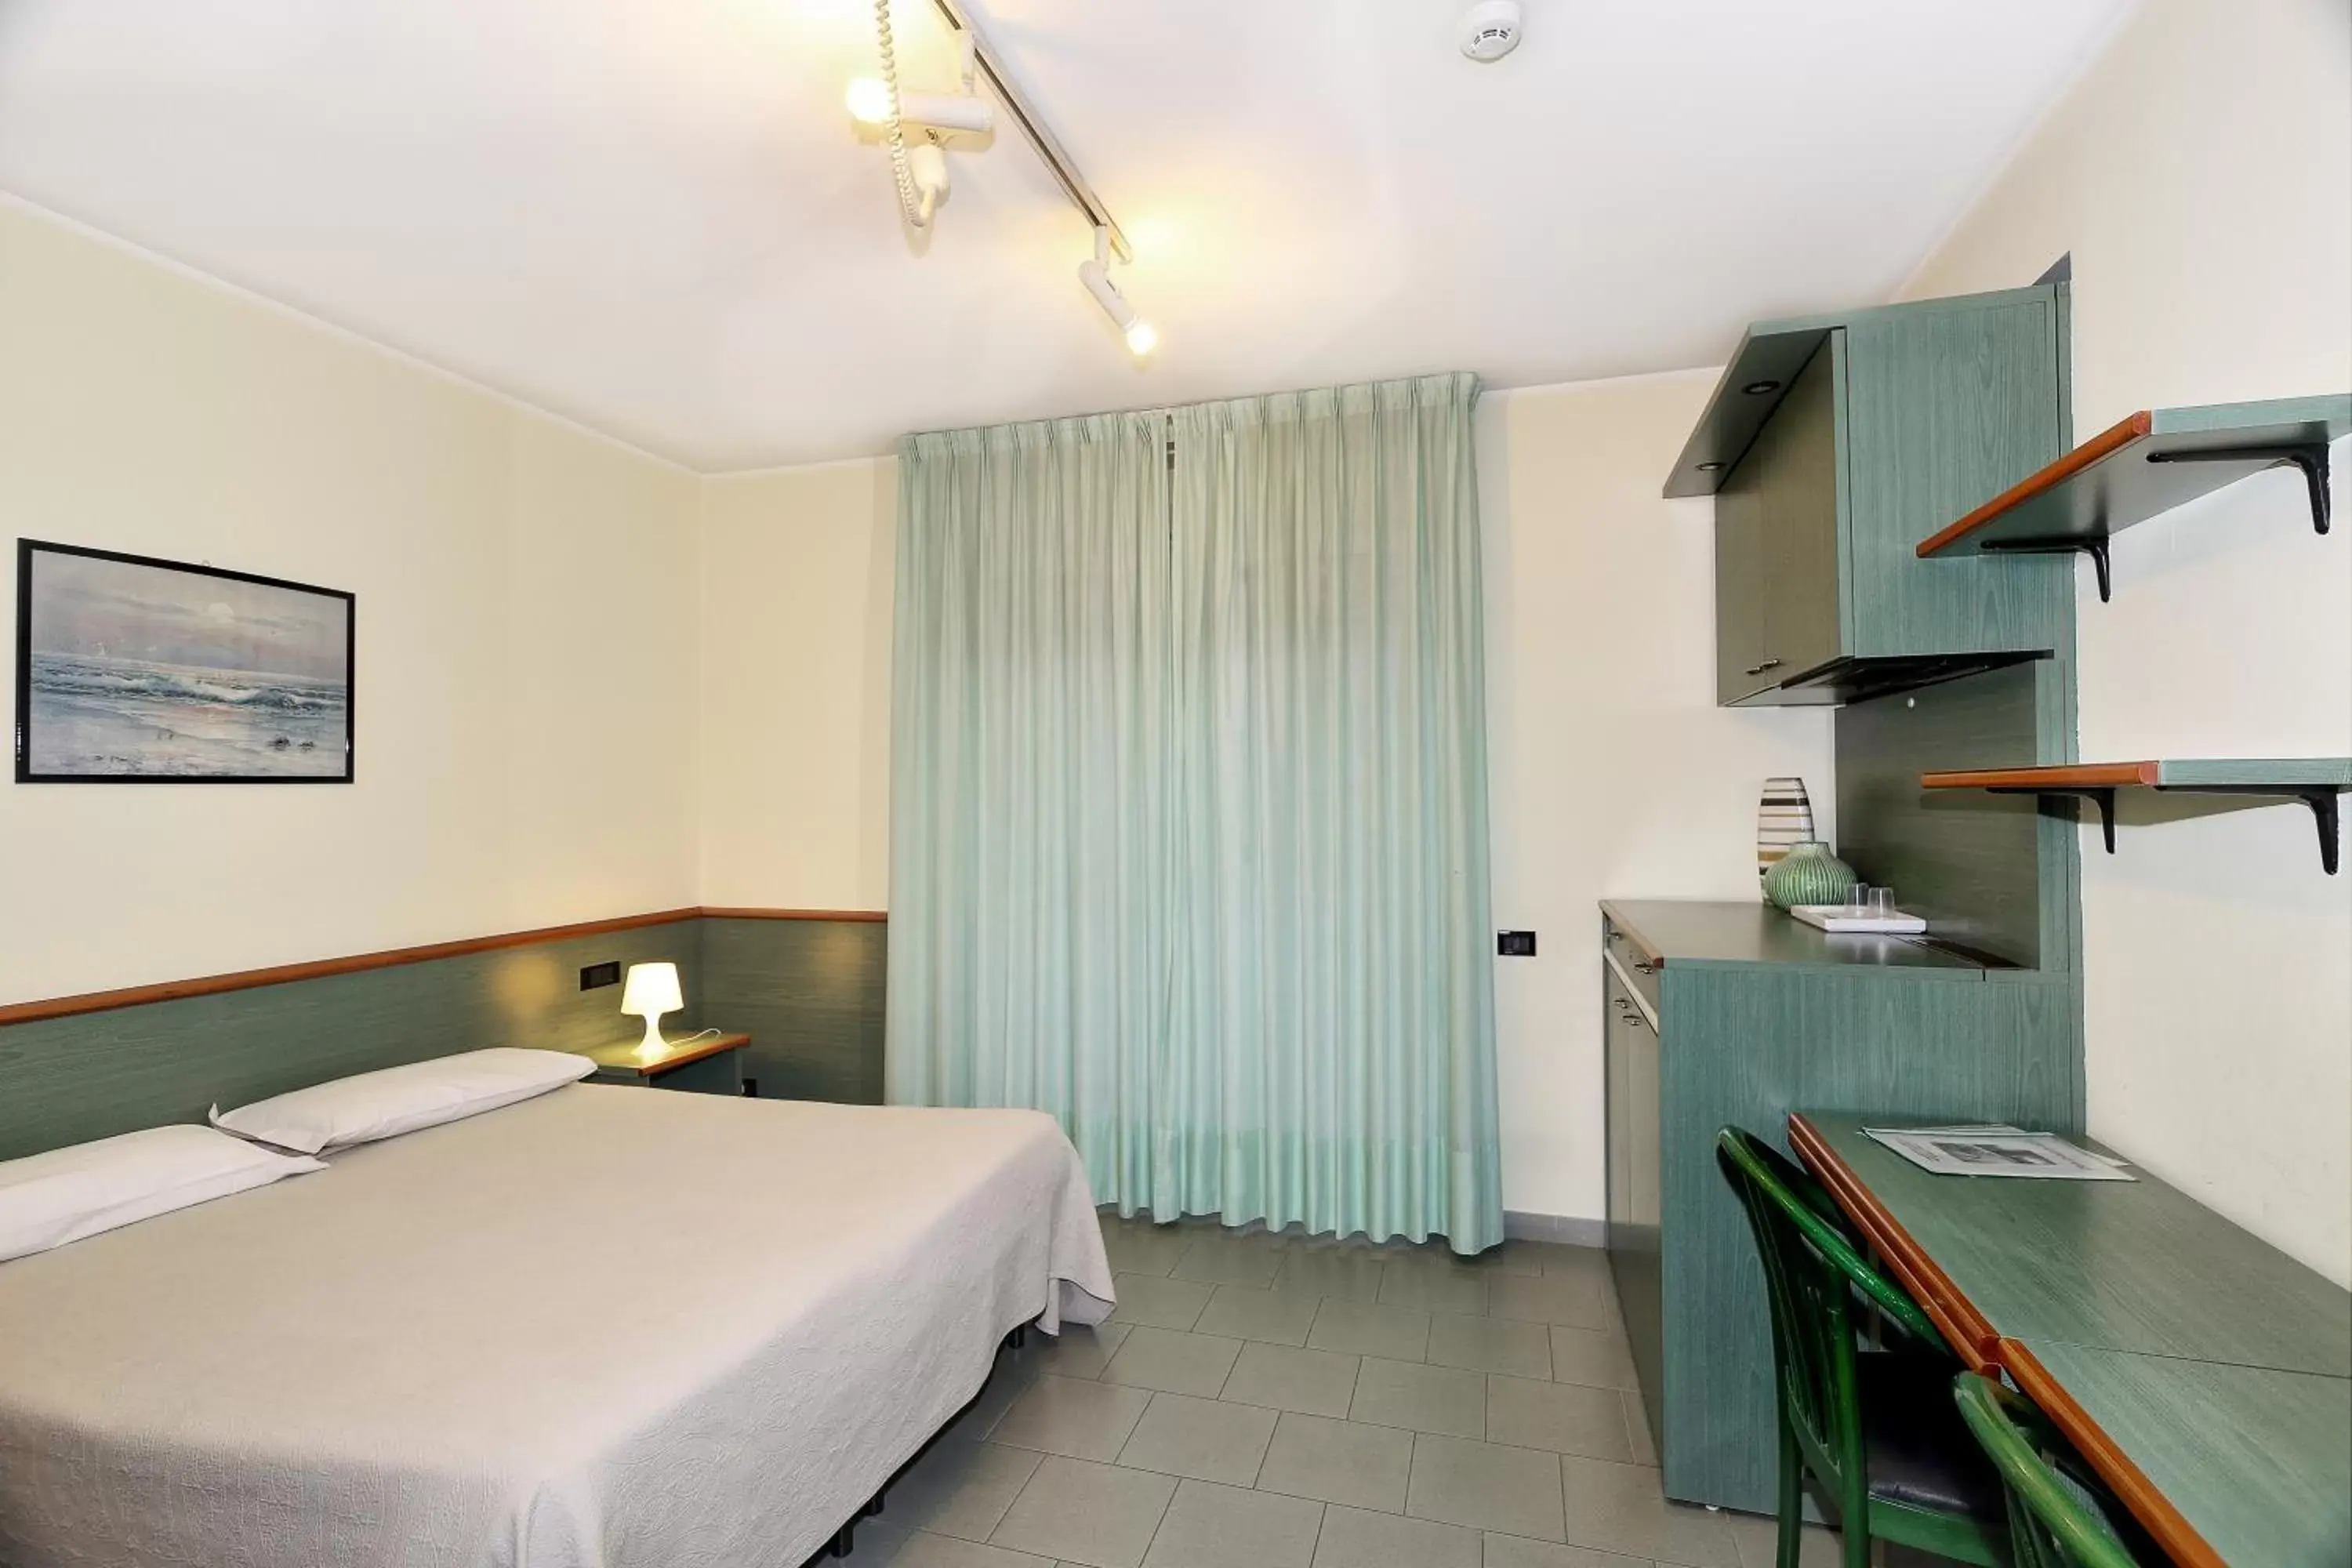 Bedroom in Hotel Residence Sogno